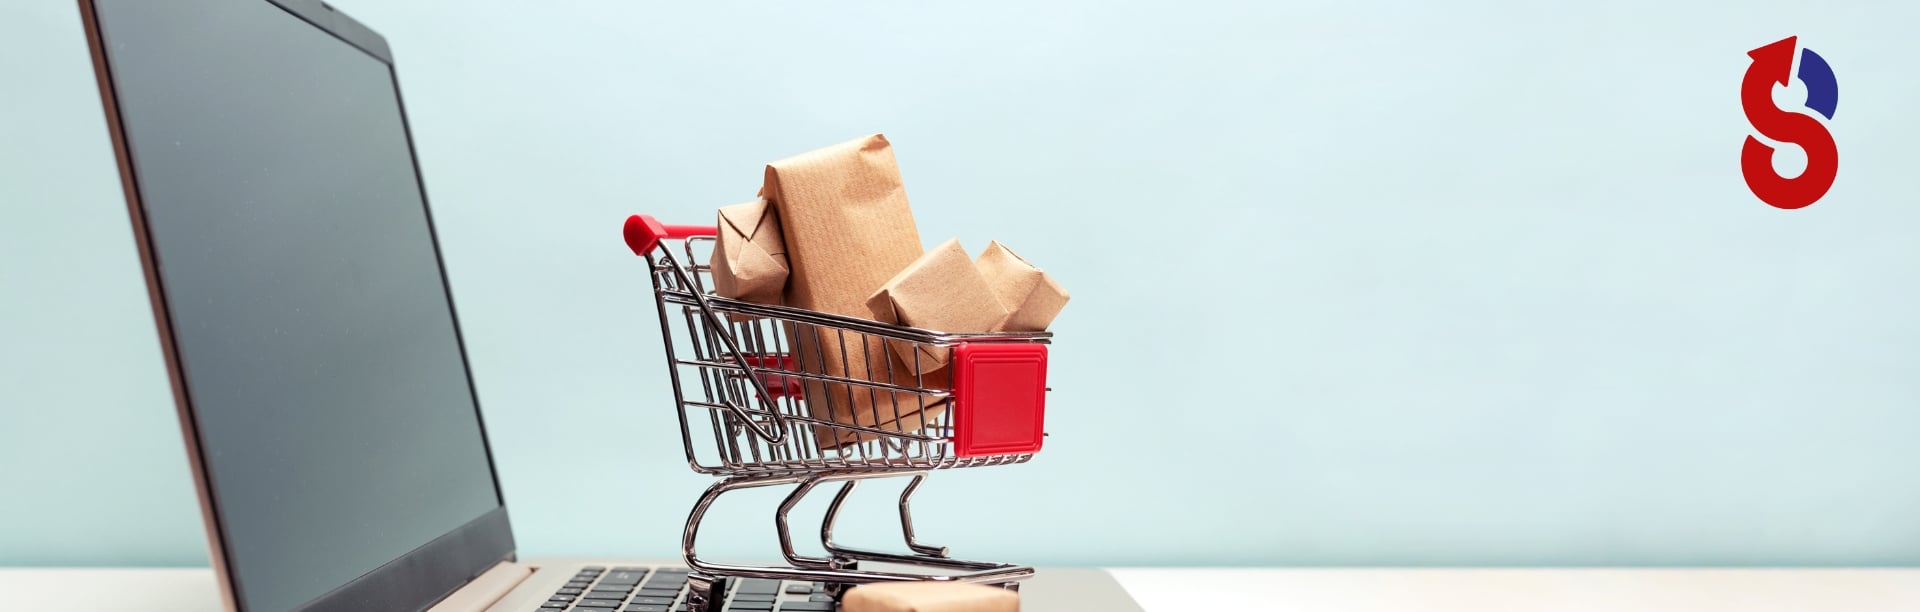 Ein kleiner Einkaufswagen voller Pakete steht auf einem Laptop, symbolisch für Onlineshop-Optimierung und digitales Einkaufen. Das Bild repräsentiert den nahtlosen Einkauf